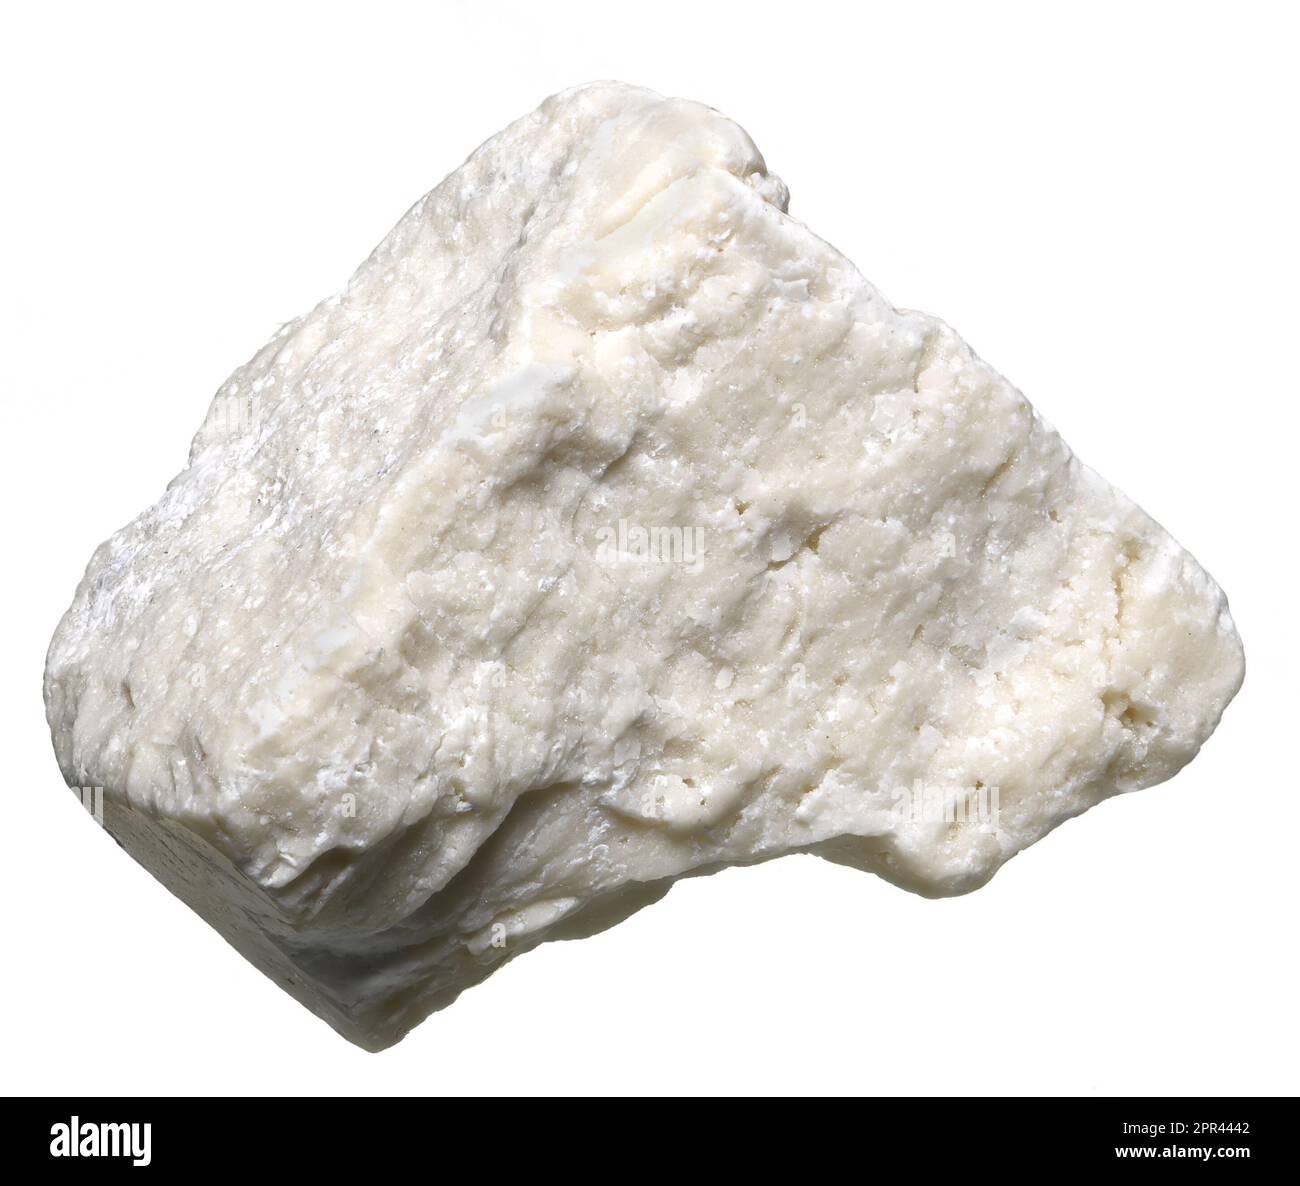 White Aragonite (Calcium carbonate) c1.5cm across Stock Photo